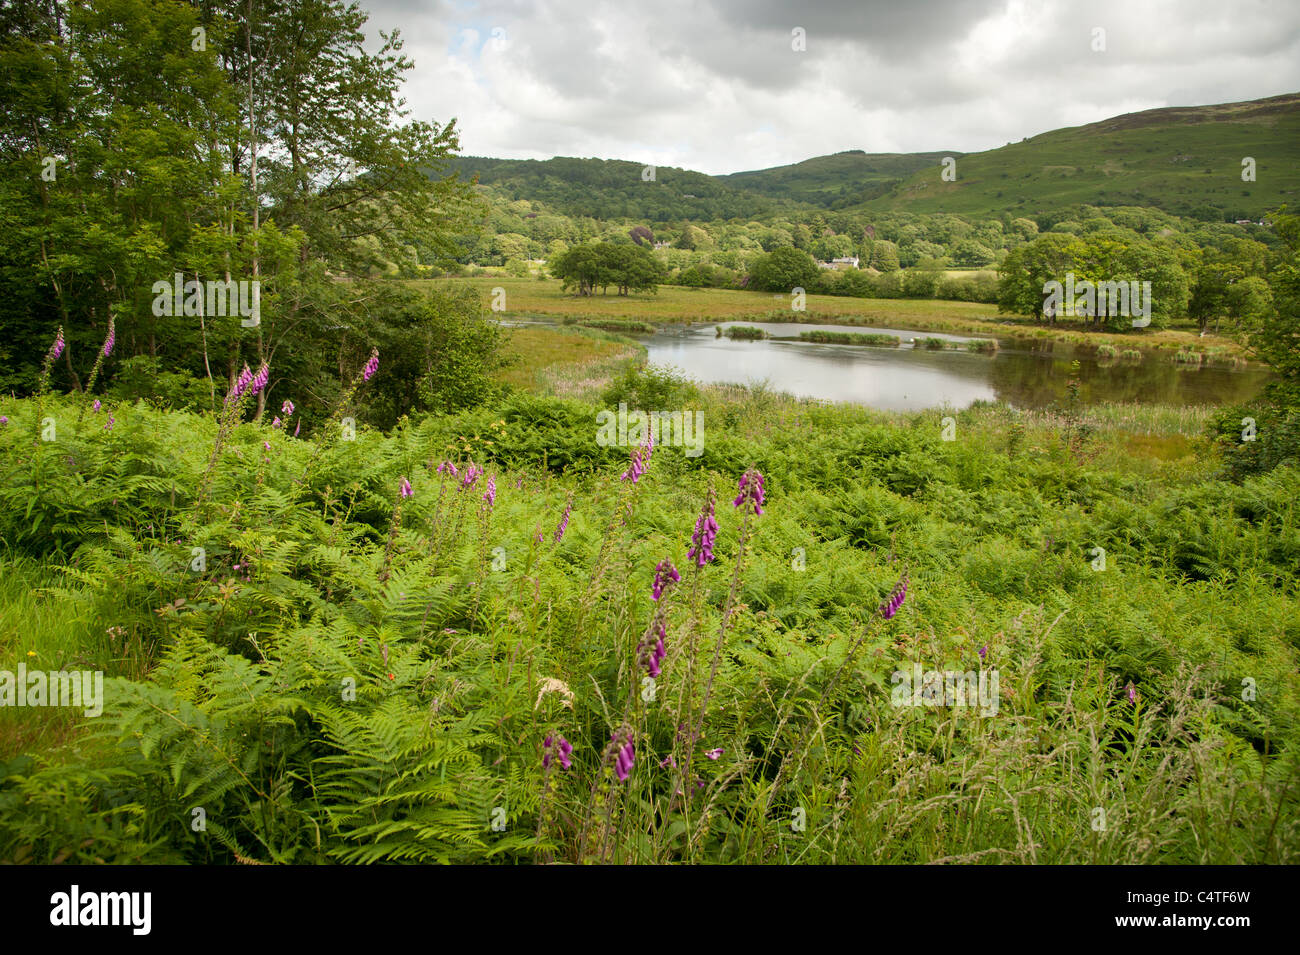 Zone umide in RSPB riserva naturale Ynys Hir, Dyfi valley, west wales - posizione della BBC Springwatch programma 2011 e 2012 Foto Stock